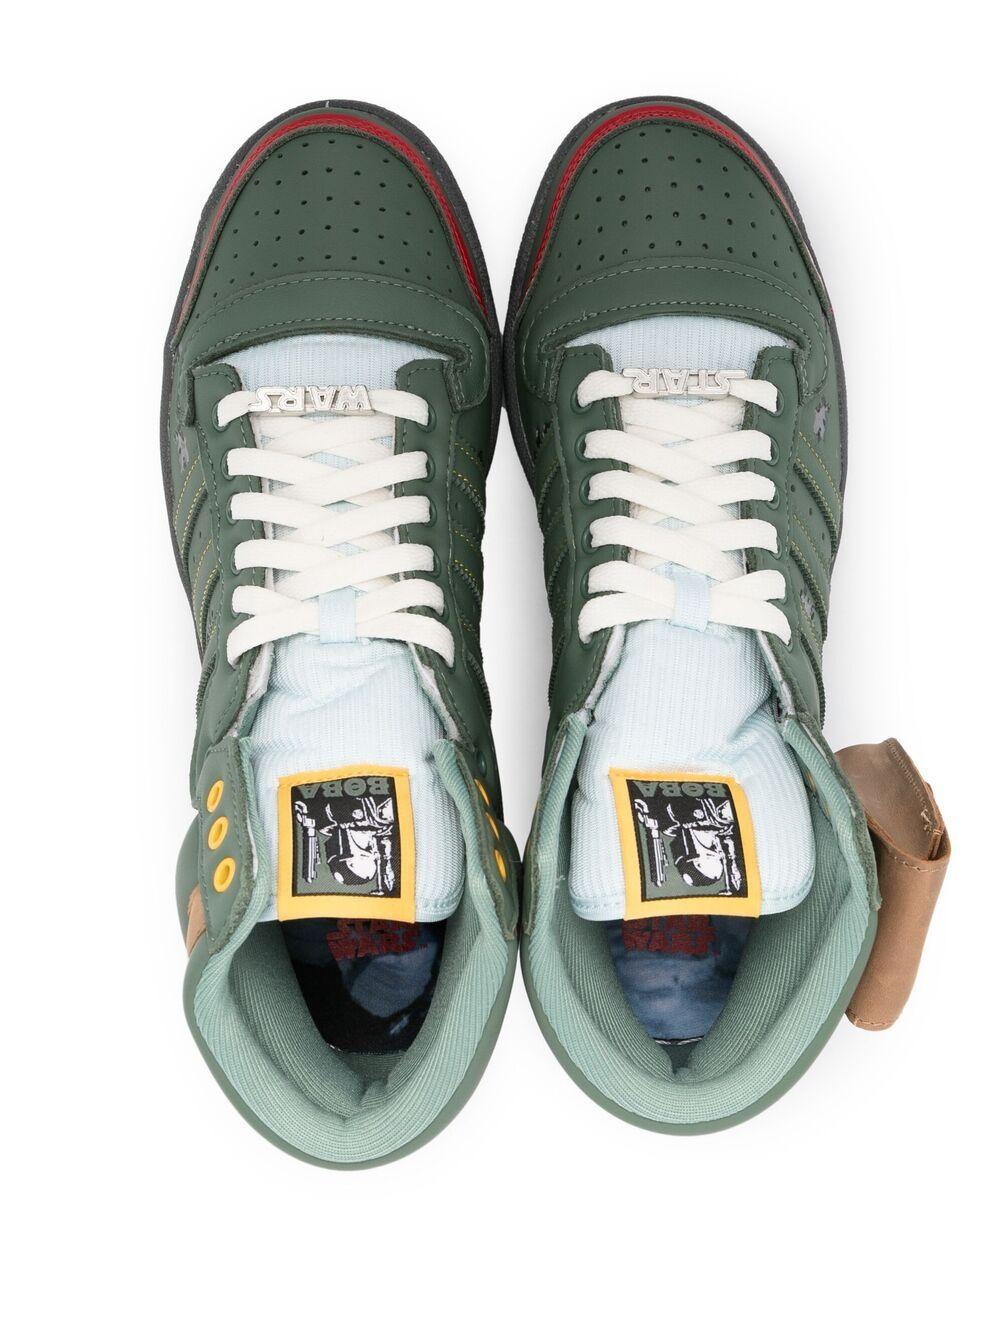 Zapatillas Boba de x Star Wars adidas de hombre de color Verde | Lyst